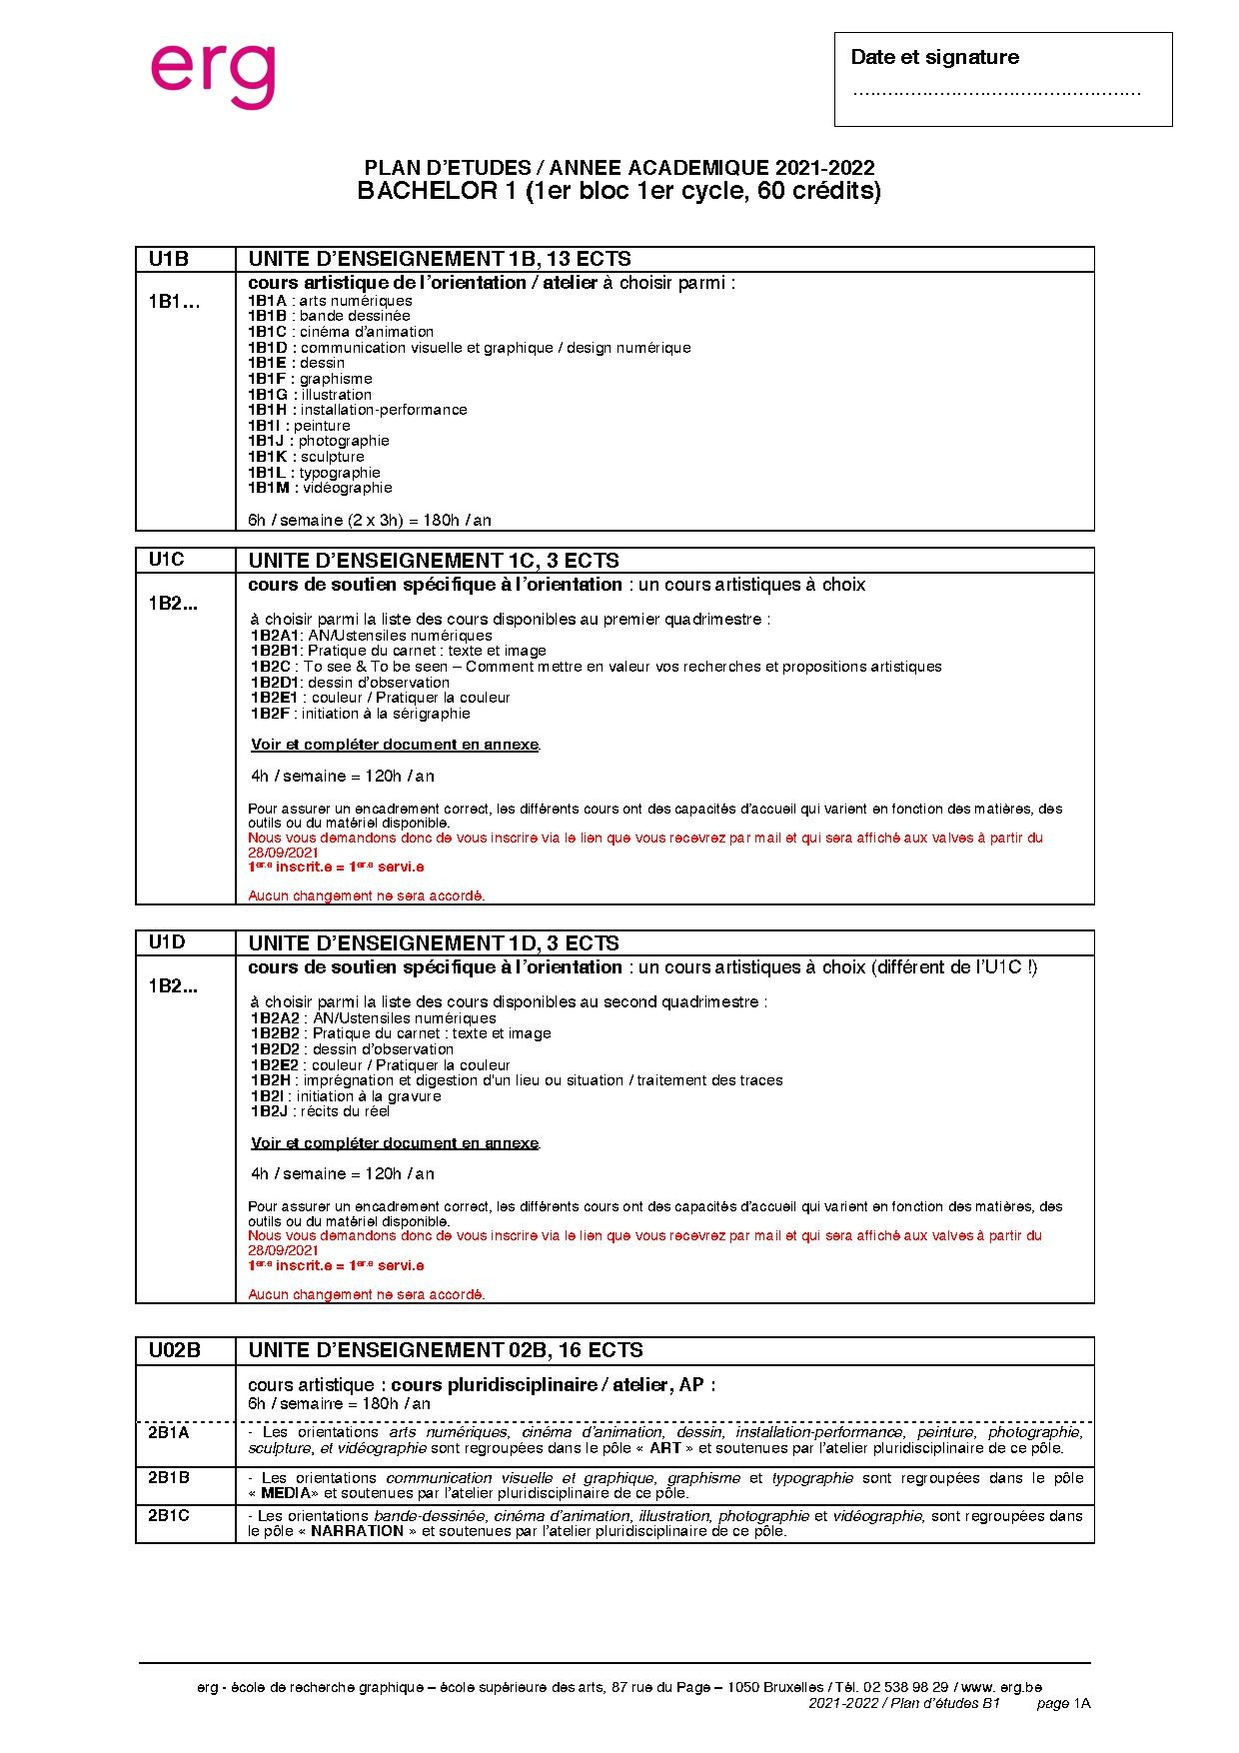 Bac1 PlanEt 2021-22.pdf